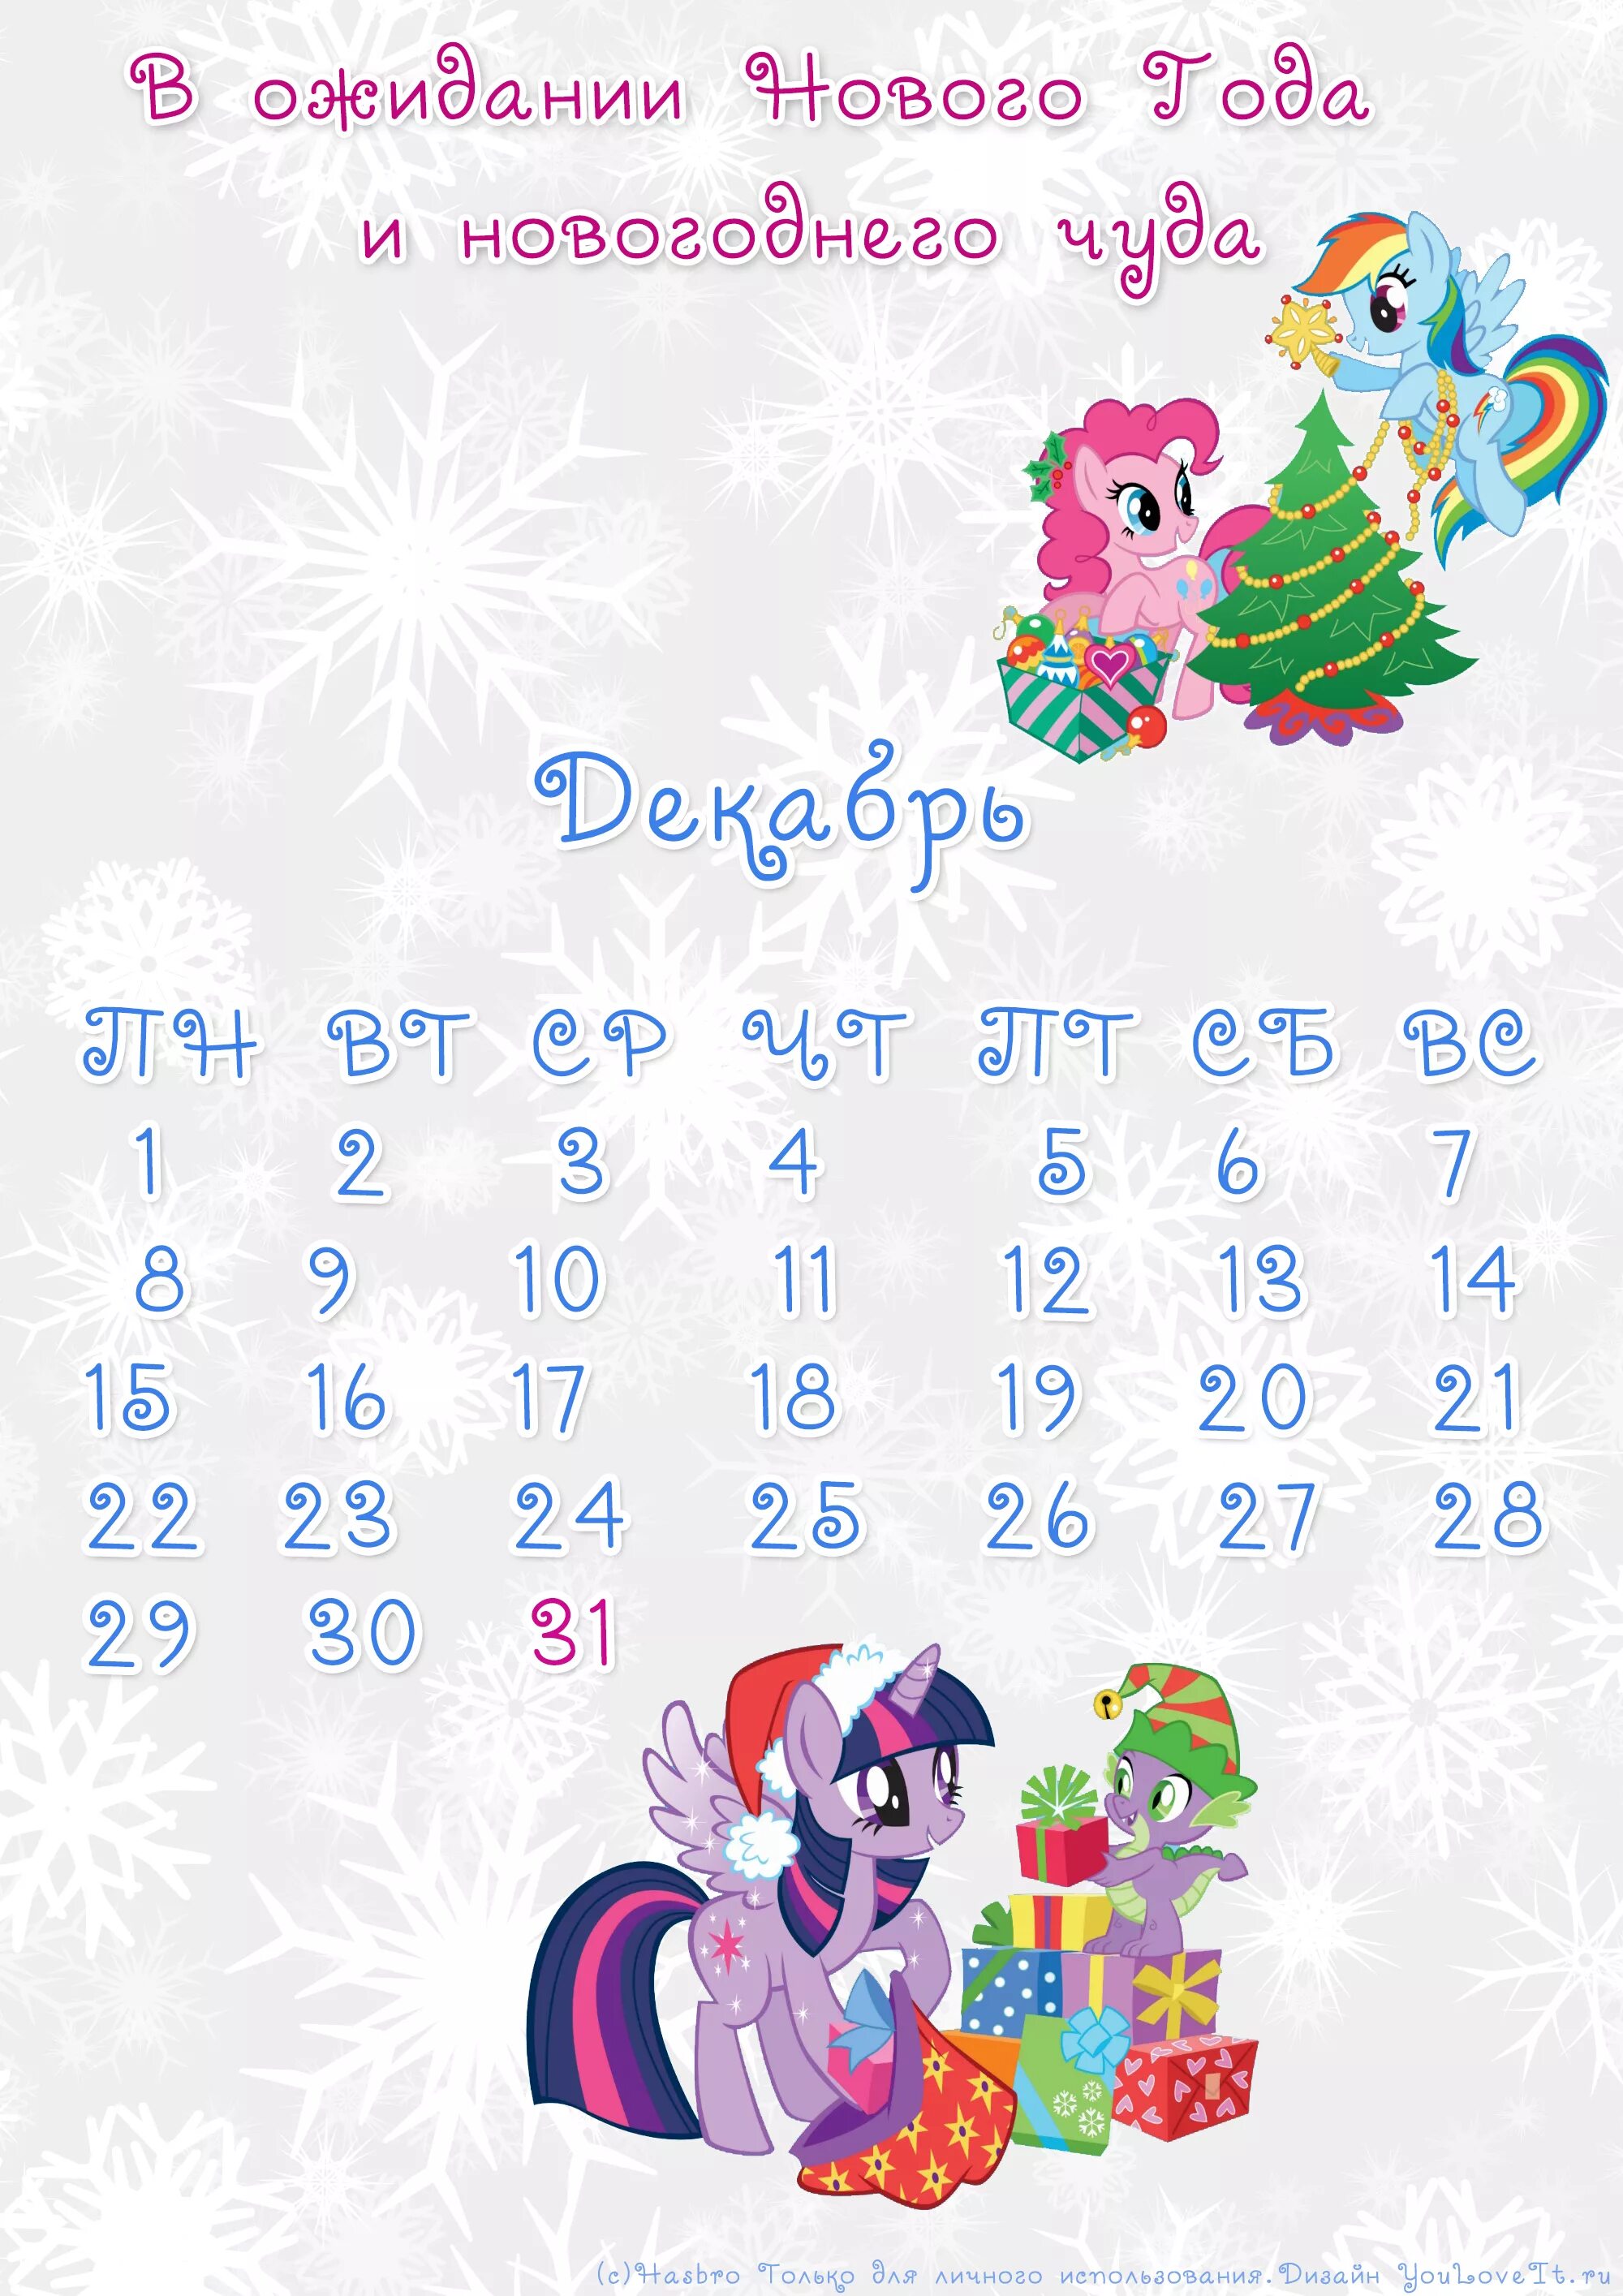 Календарь до нового года. Календарь до нового года осталось. Календарик до нового года. Детские календари до нового года.